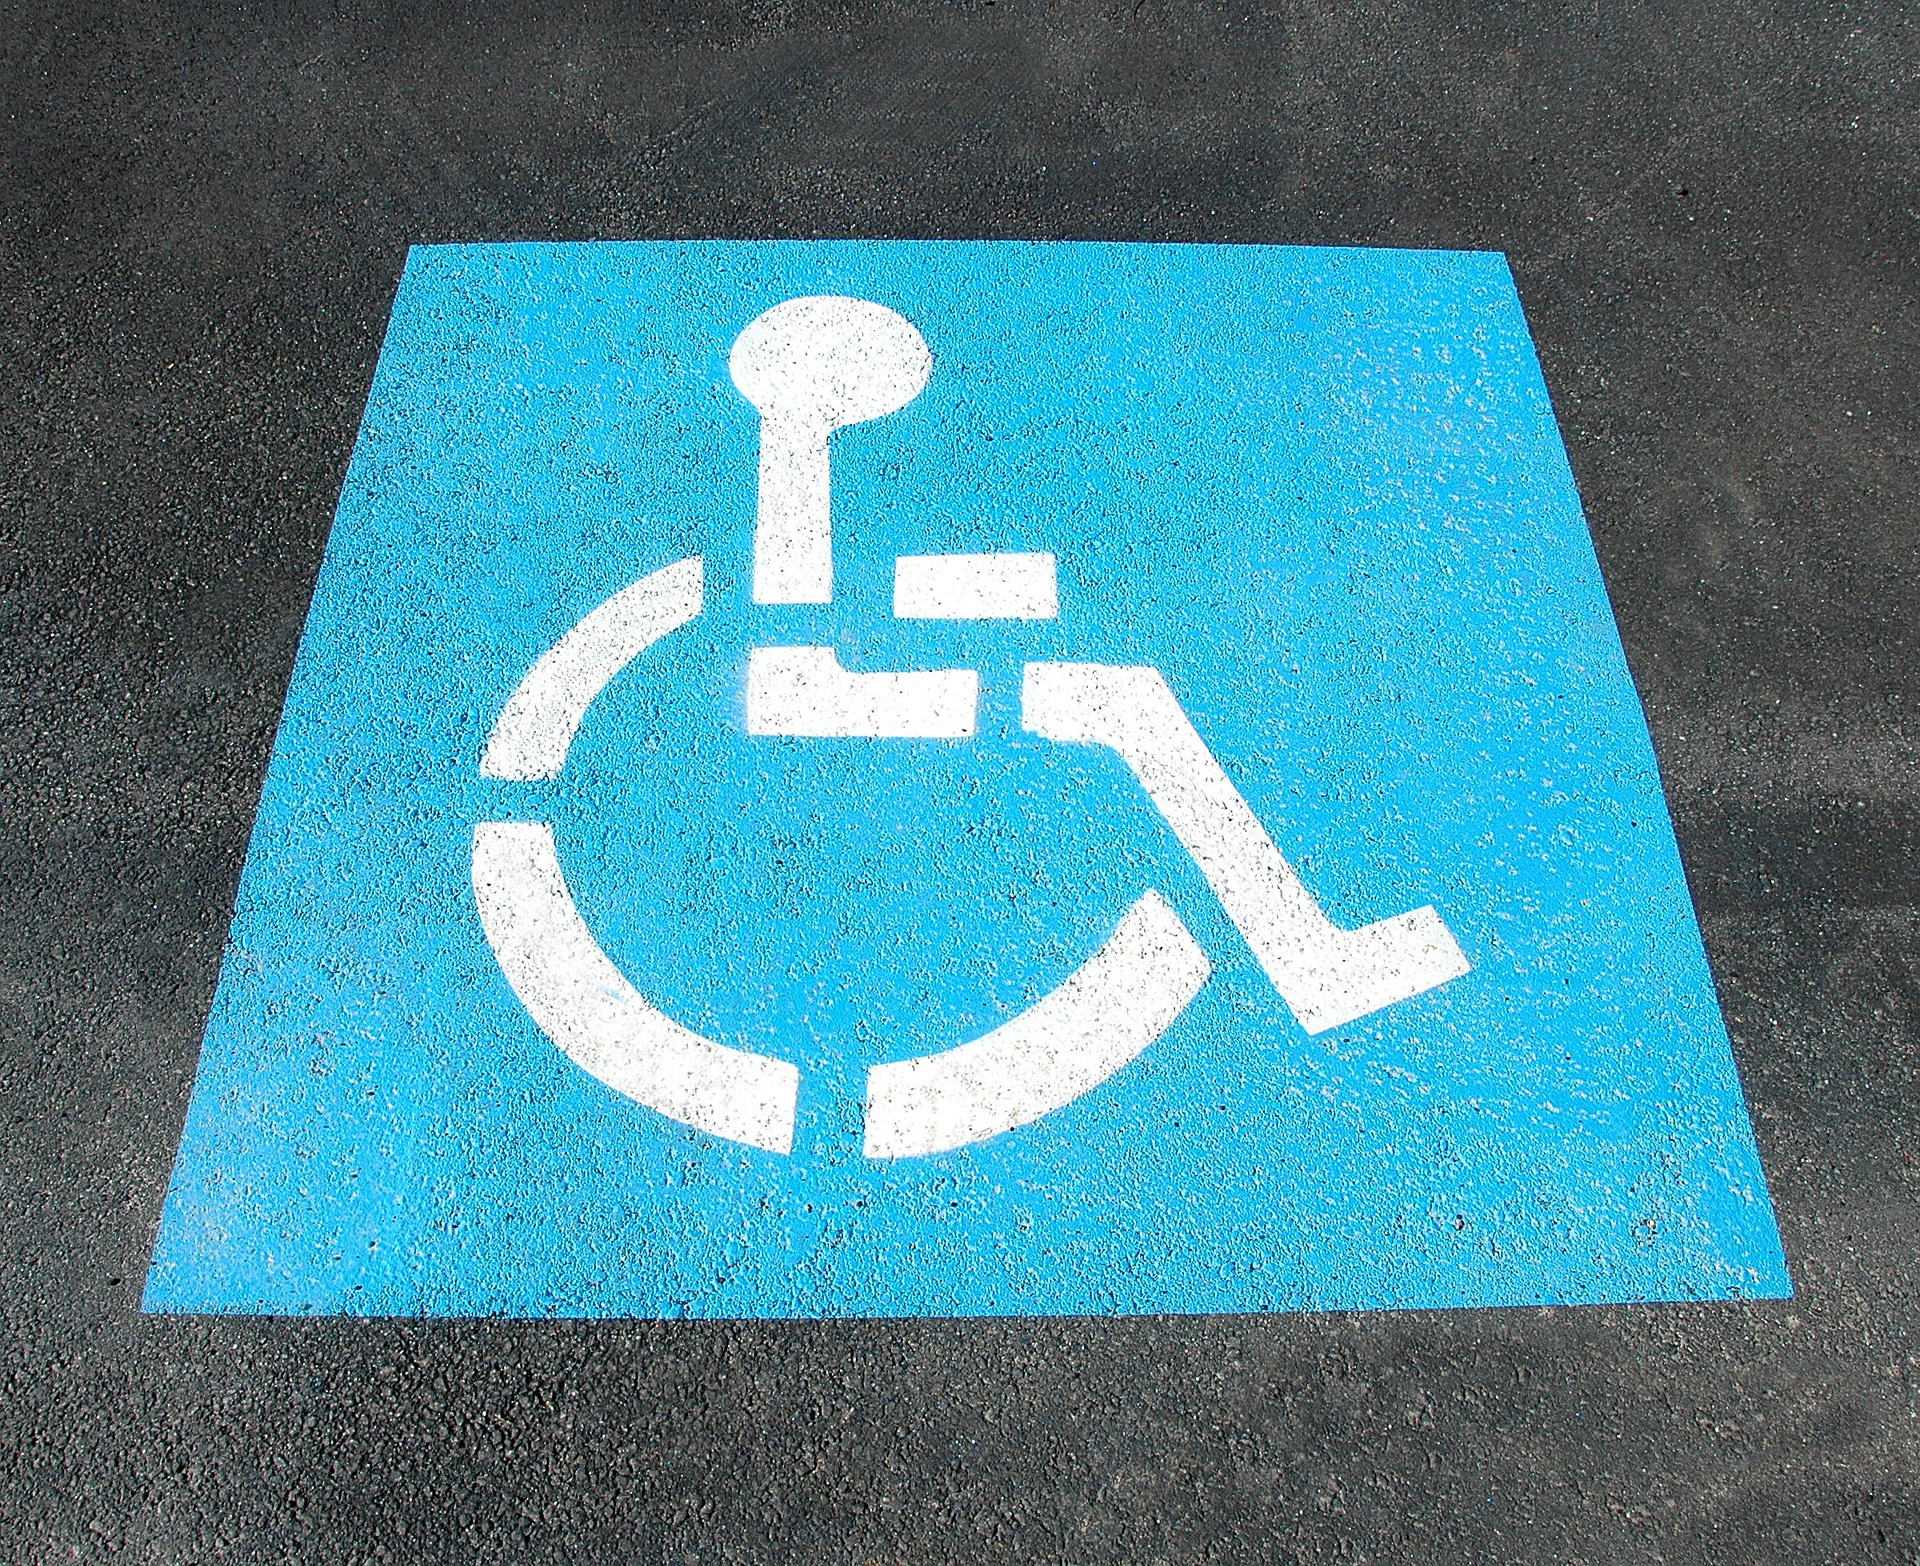 Du changement pour les cartes d’invalidité et le stationnement des personnes en situation de handicap